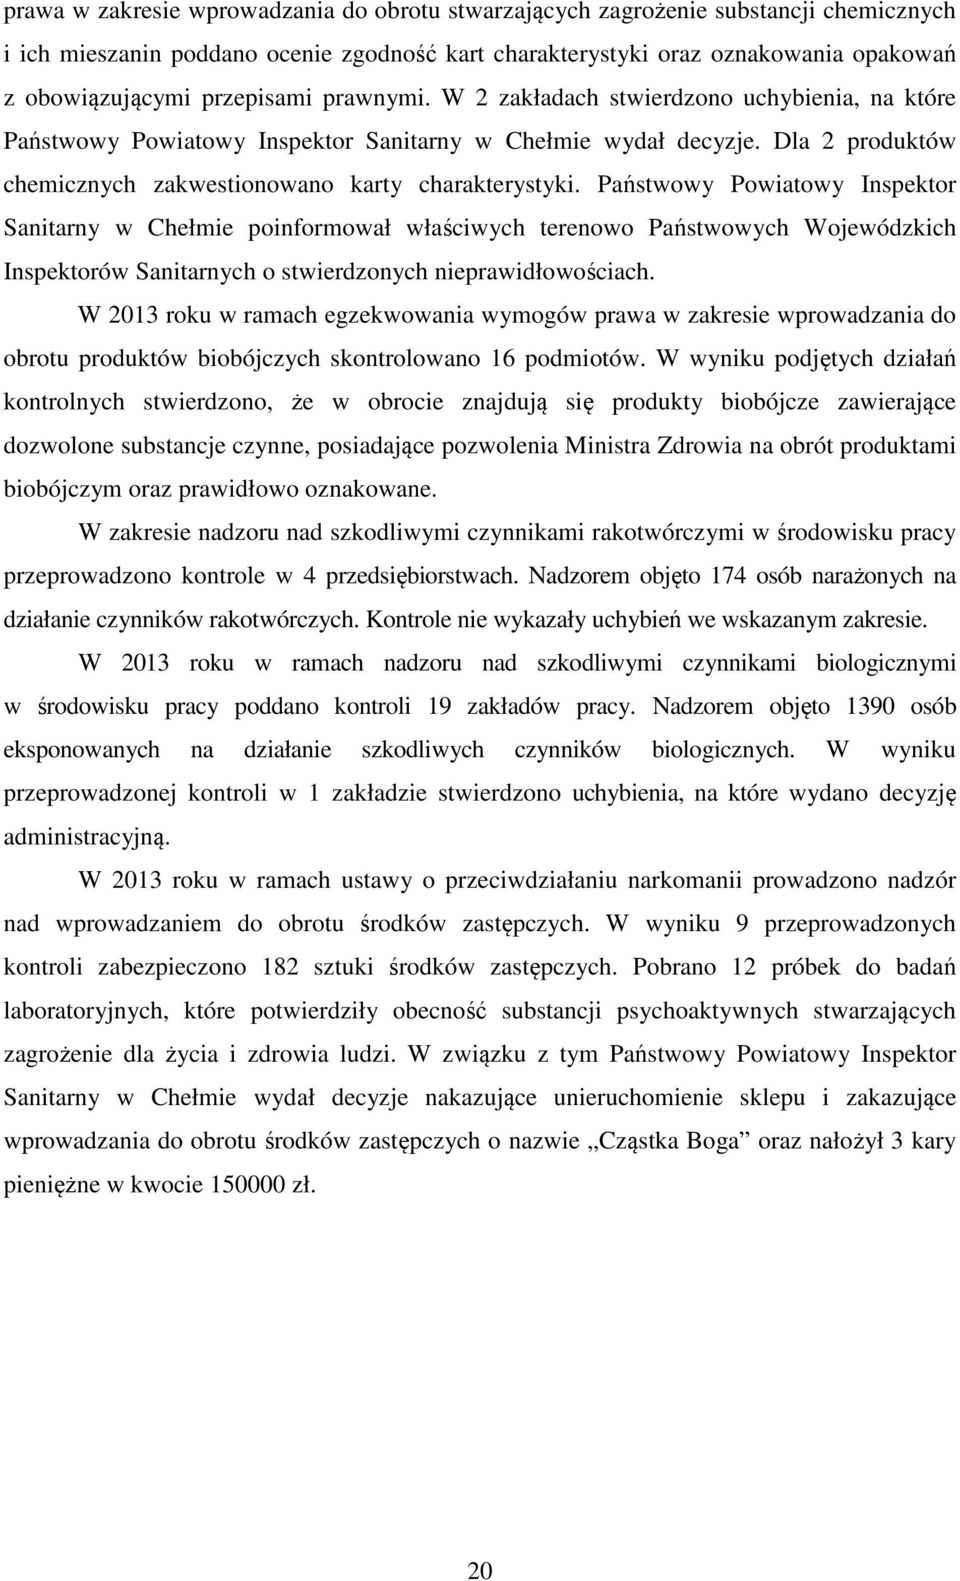 Państwowy Powiatowy Inspektor Sanitarny w Chełmie poinformował właściwych terenowo Państwowych Wojewódzkich Inspektorów Sanitarnych o stwierdzonych nieprawidłowościach.